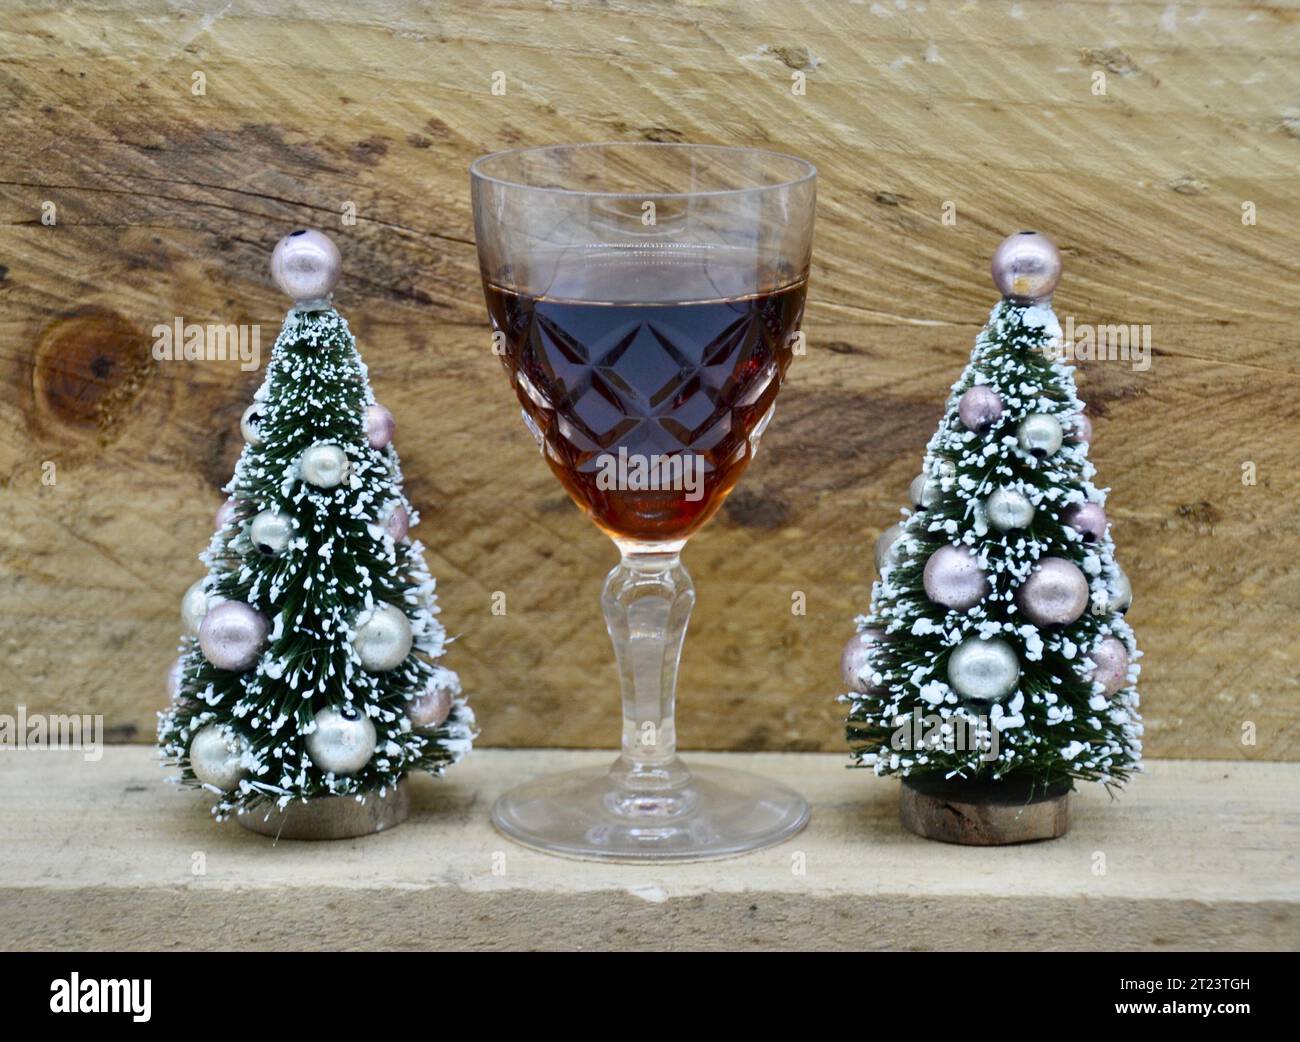 Zwei kleine verzierte, gefälschte, schneebedeckte Weihnachtsbäume mit einem Glas Portwein oder Sherry für den Weihnachtsmann vor einem rauen Holzhüttenhintergrund Stockfoto